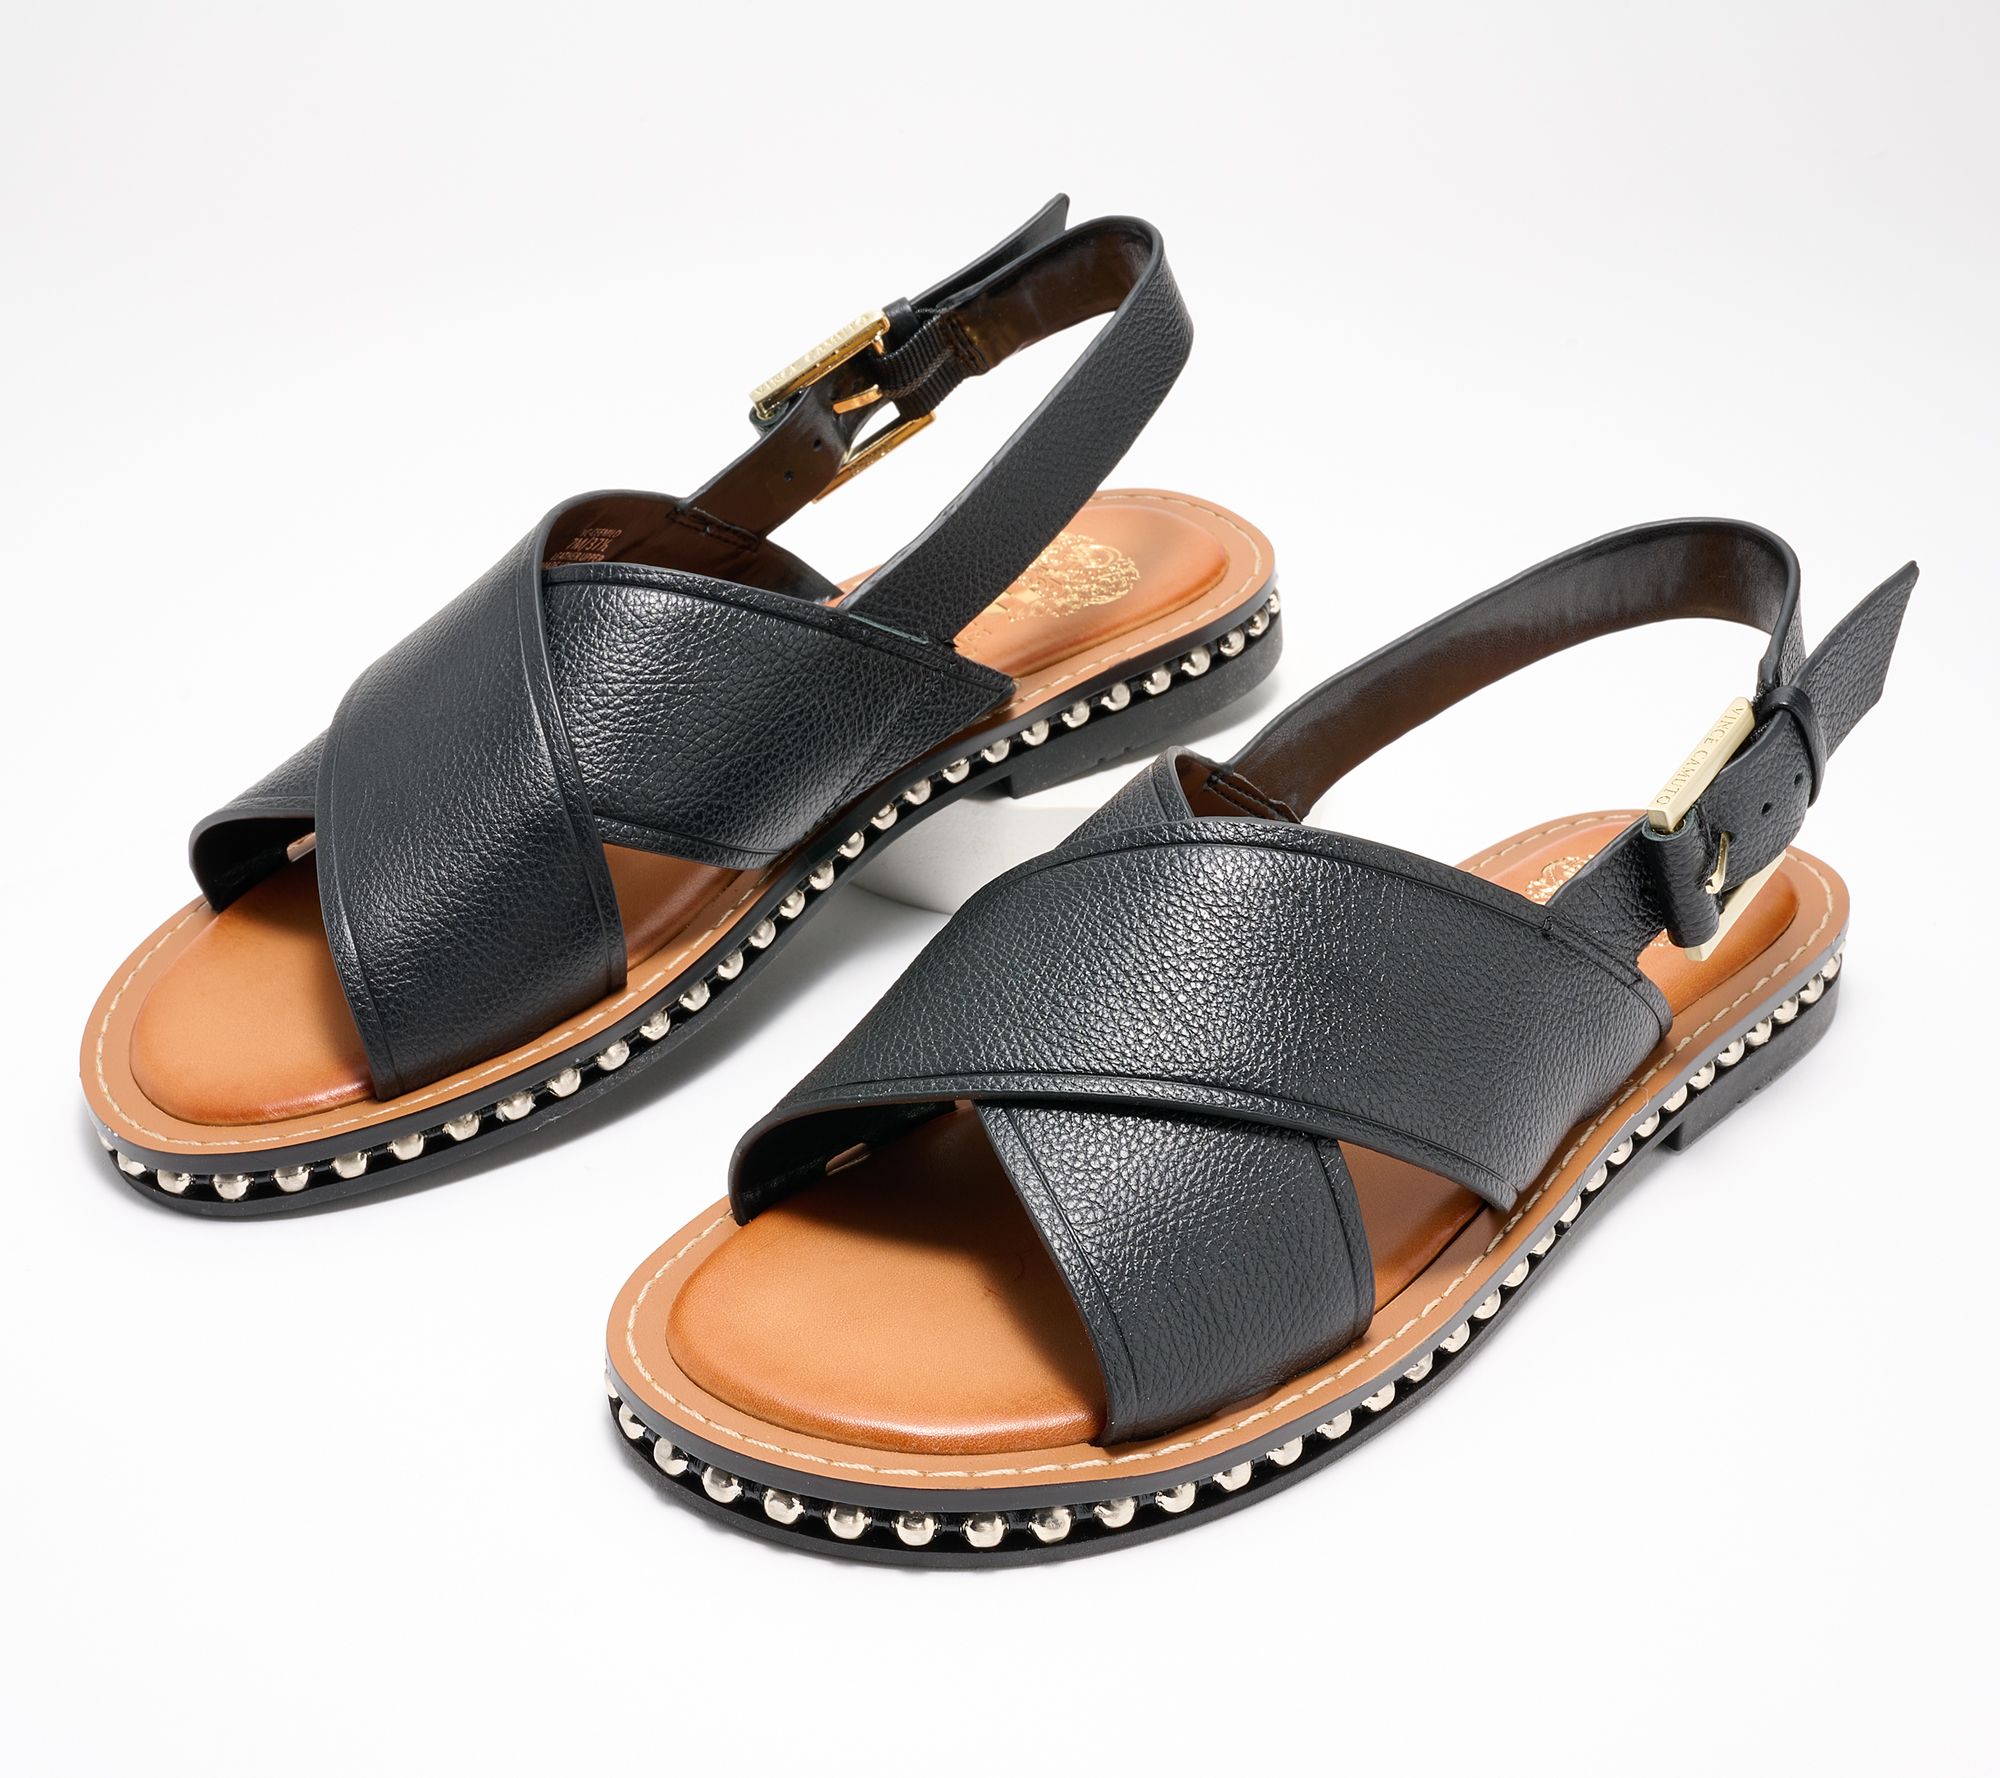 Vince Camuto Leather Crossband Slide Sandals - Belinsda 